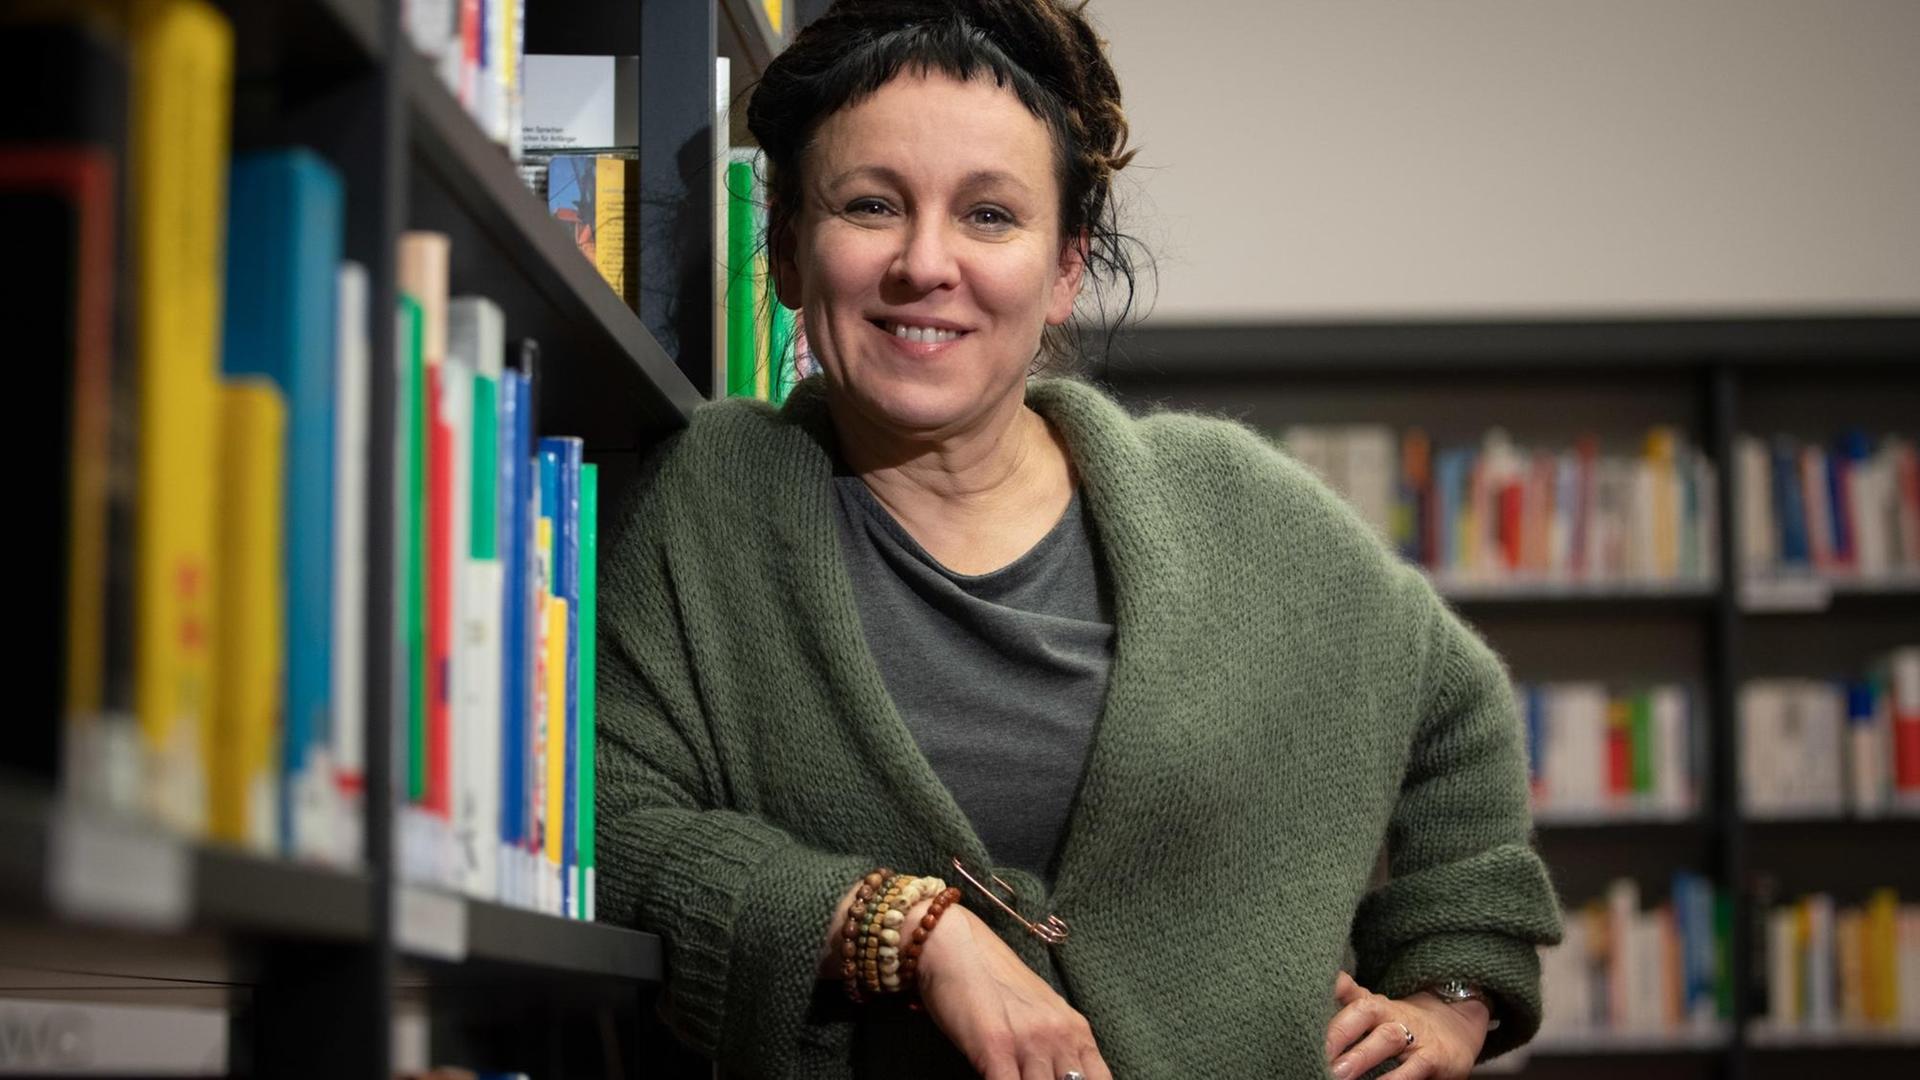 Die polnische Autorin Olga Tokarczuk steht im Vorfeld einer Lesung an einem Bücherregal.